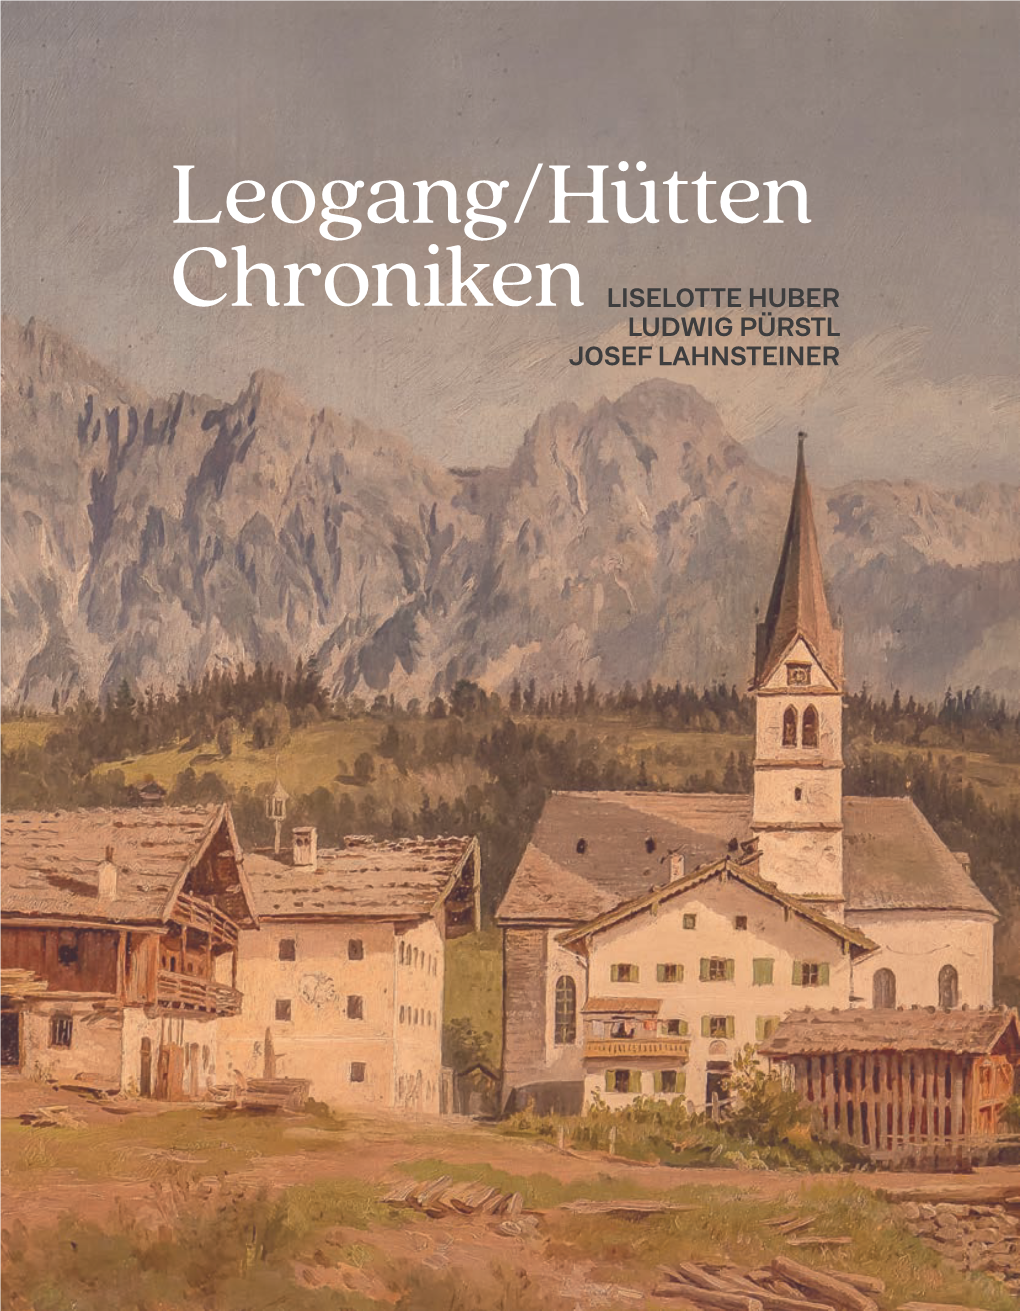 Leogang/Hütten Chroniken LISELOTTE HUBER LUDWIG PÜRSTL JOSEF LAHNSTEINER